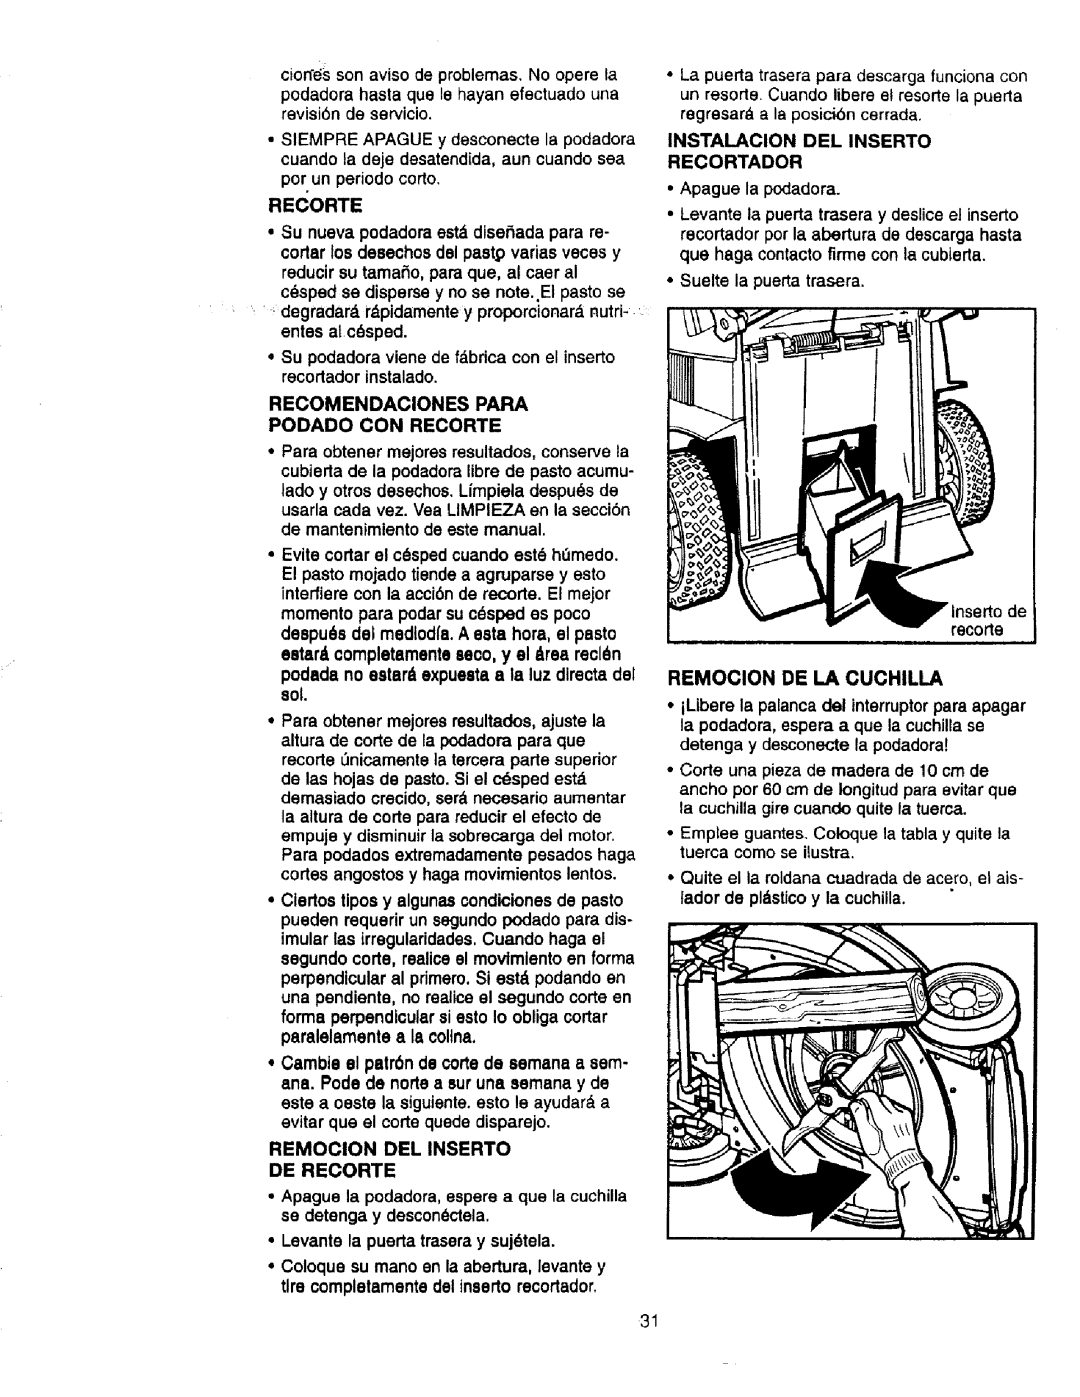 Craftsman 900.370520 manual Remocion De La Cuchilla 